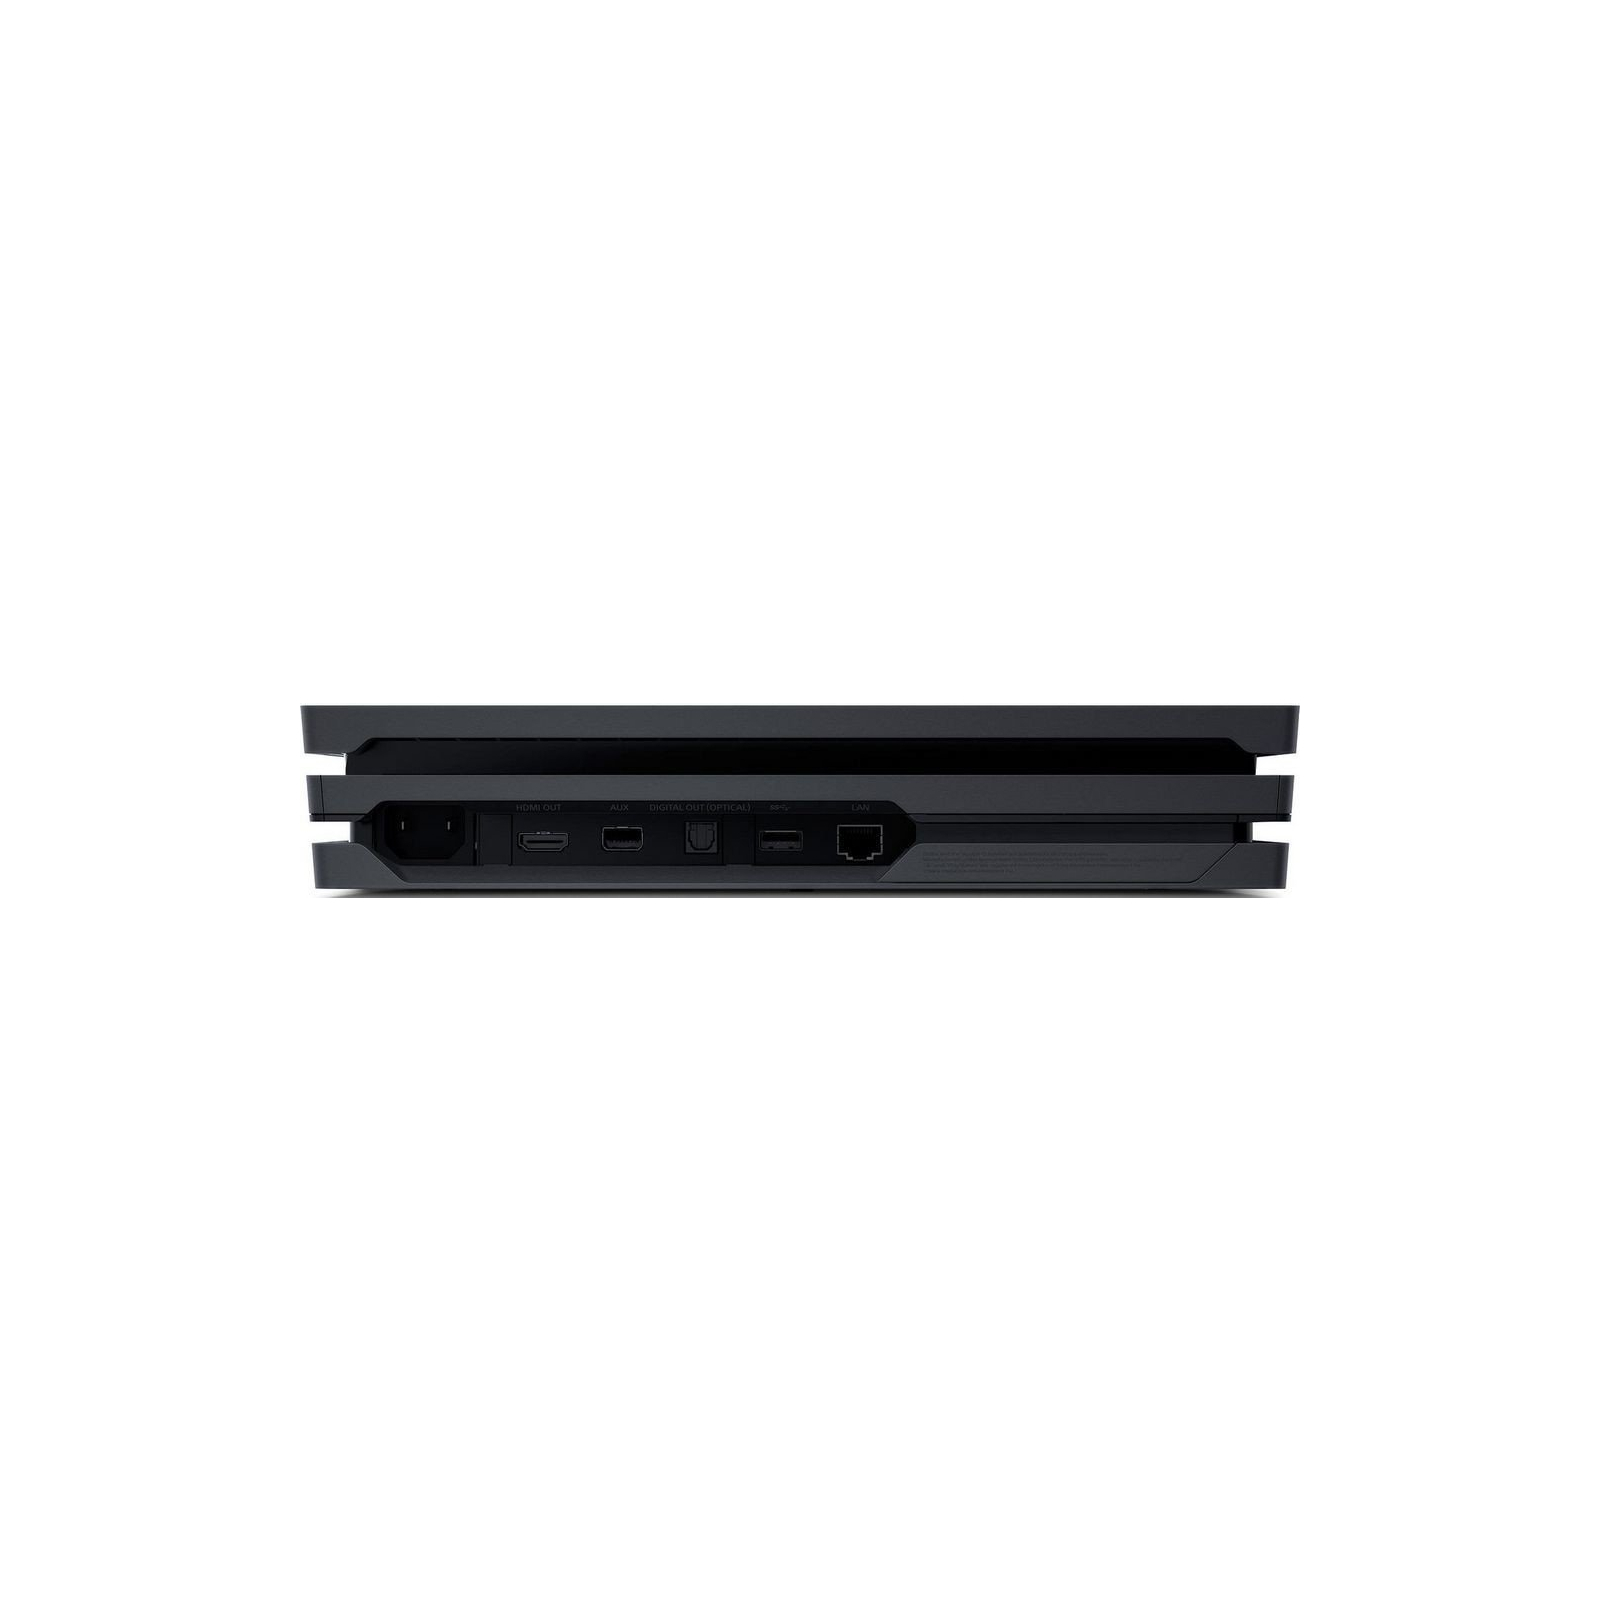 Игровая консоль Sony PlayStation 4 Pro 1TB black (CUH-7108B) изображение 9